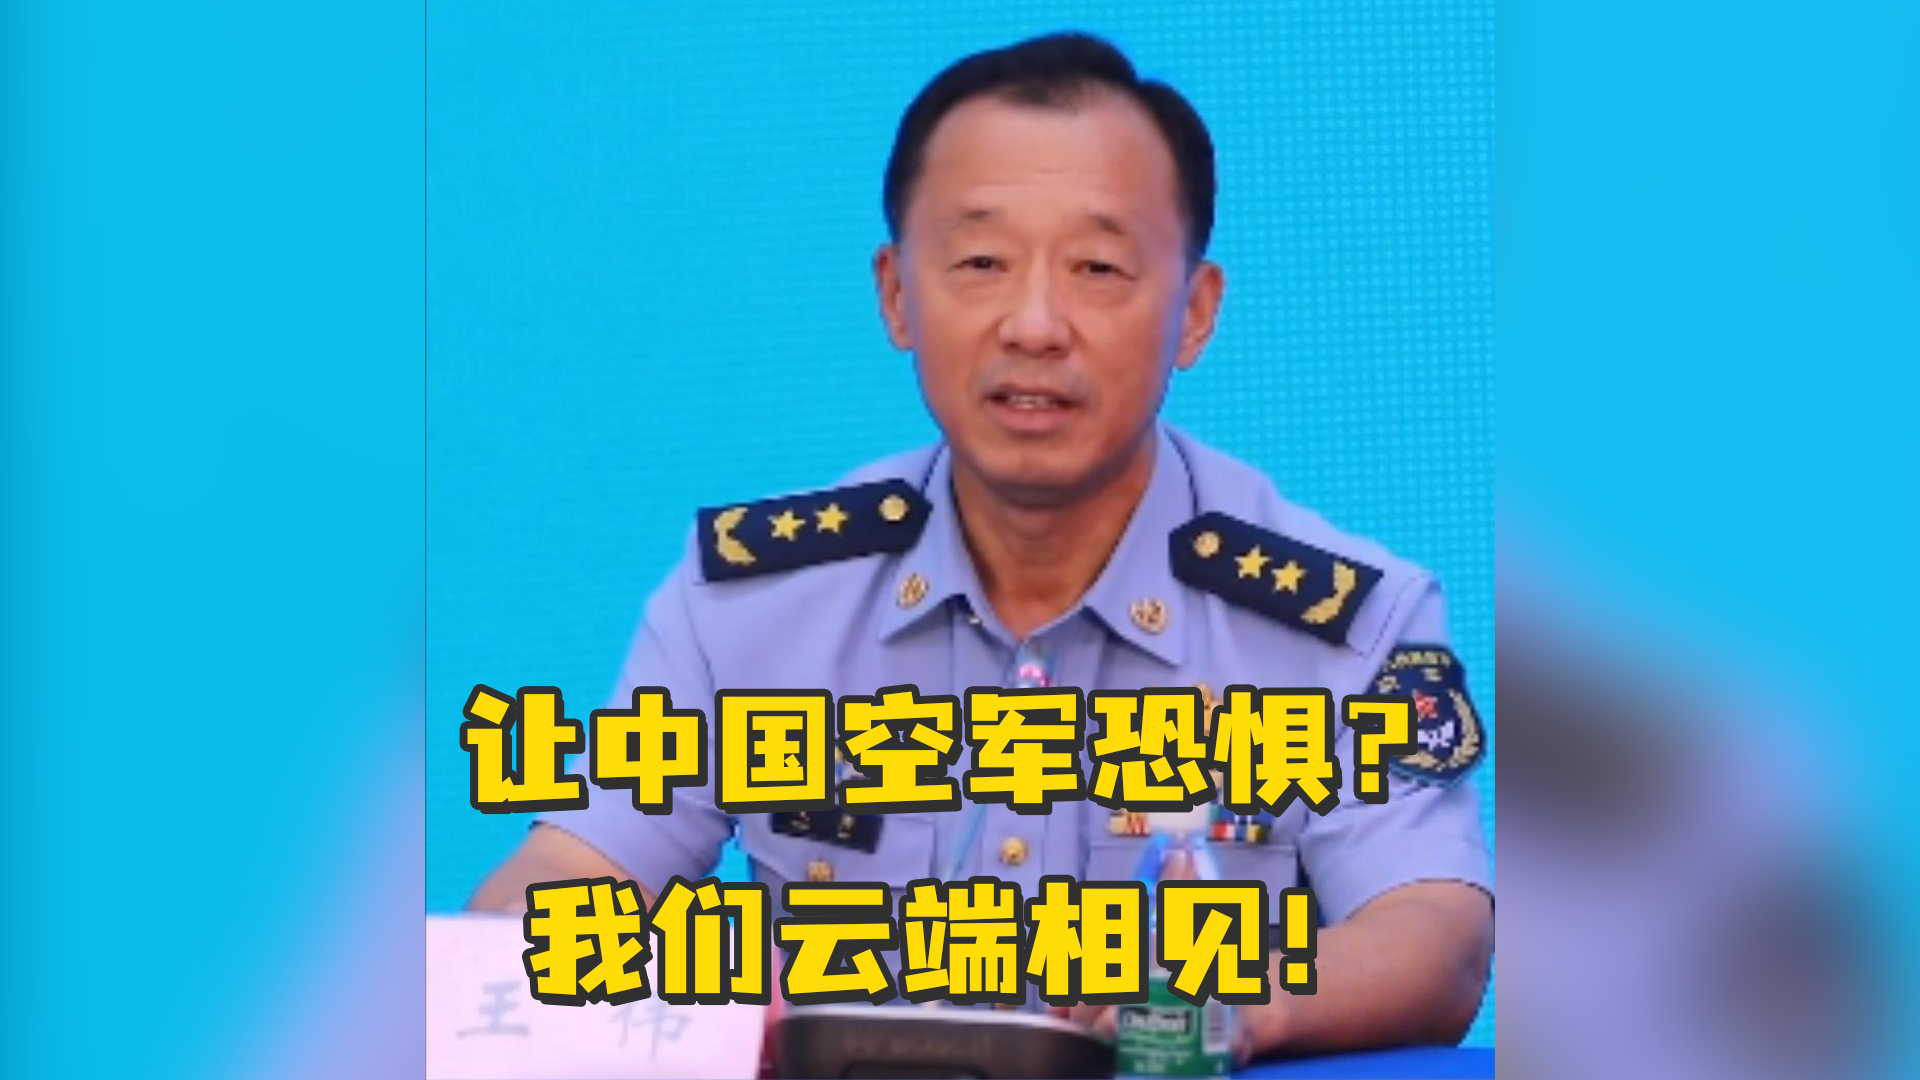 某国声称要让中国空军恐惧？空军副司令员：让我们云端相见